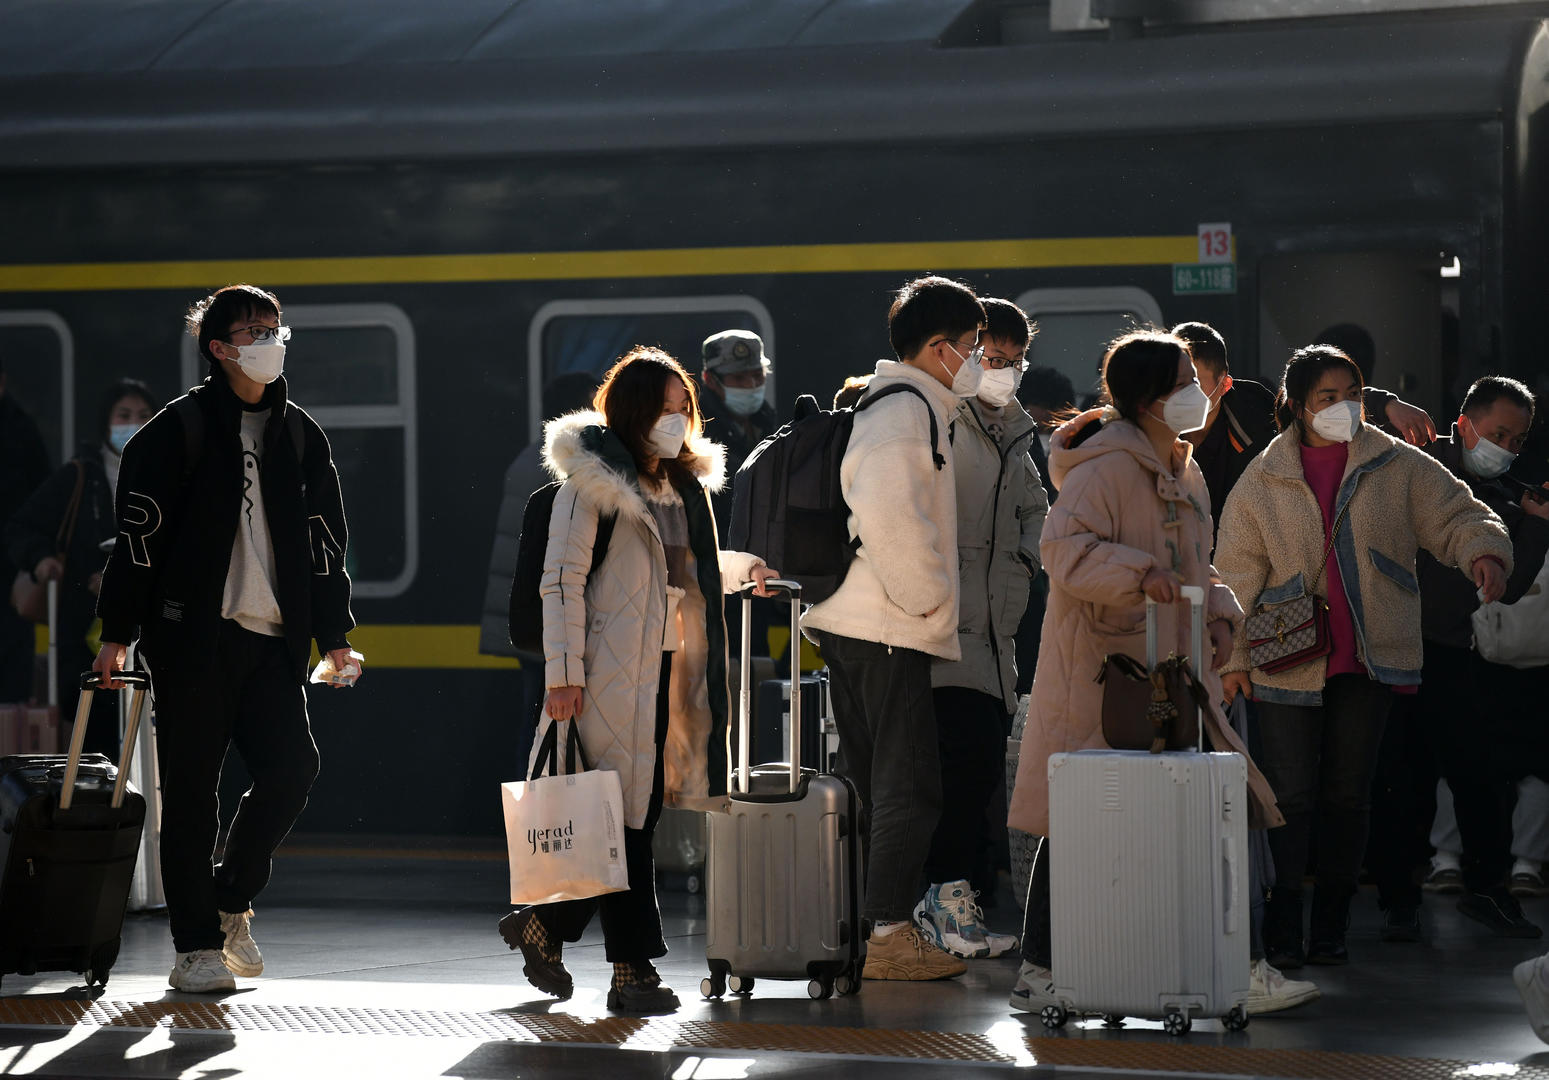 ↑旅客准备上火车 据视觉中国